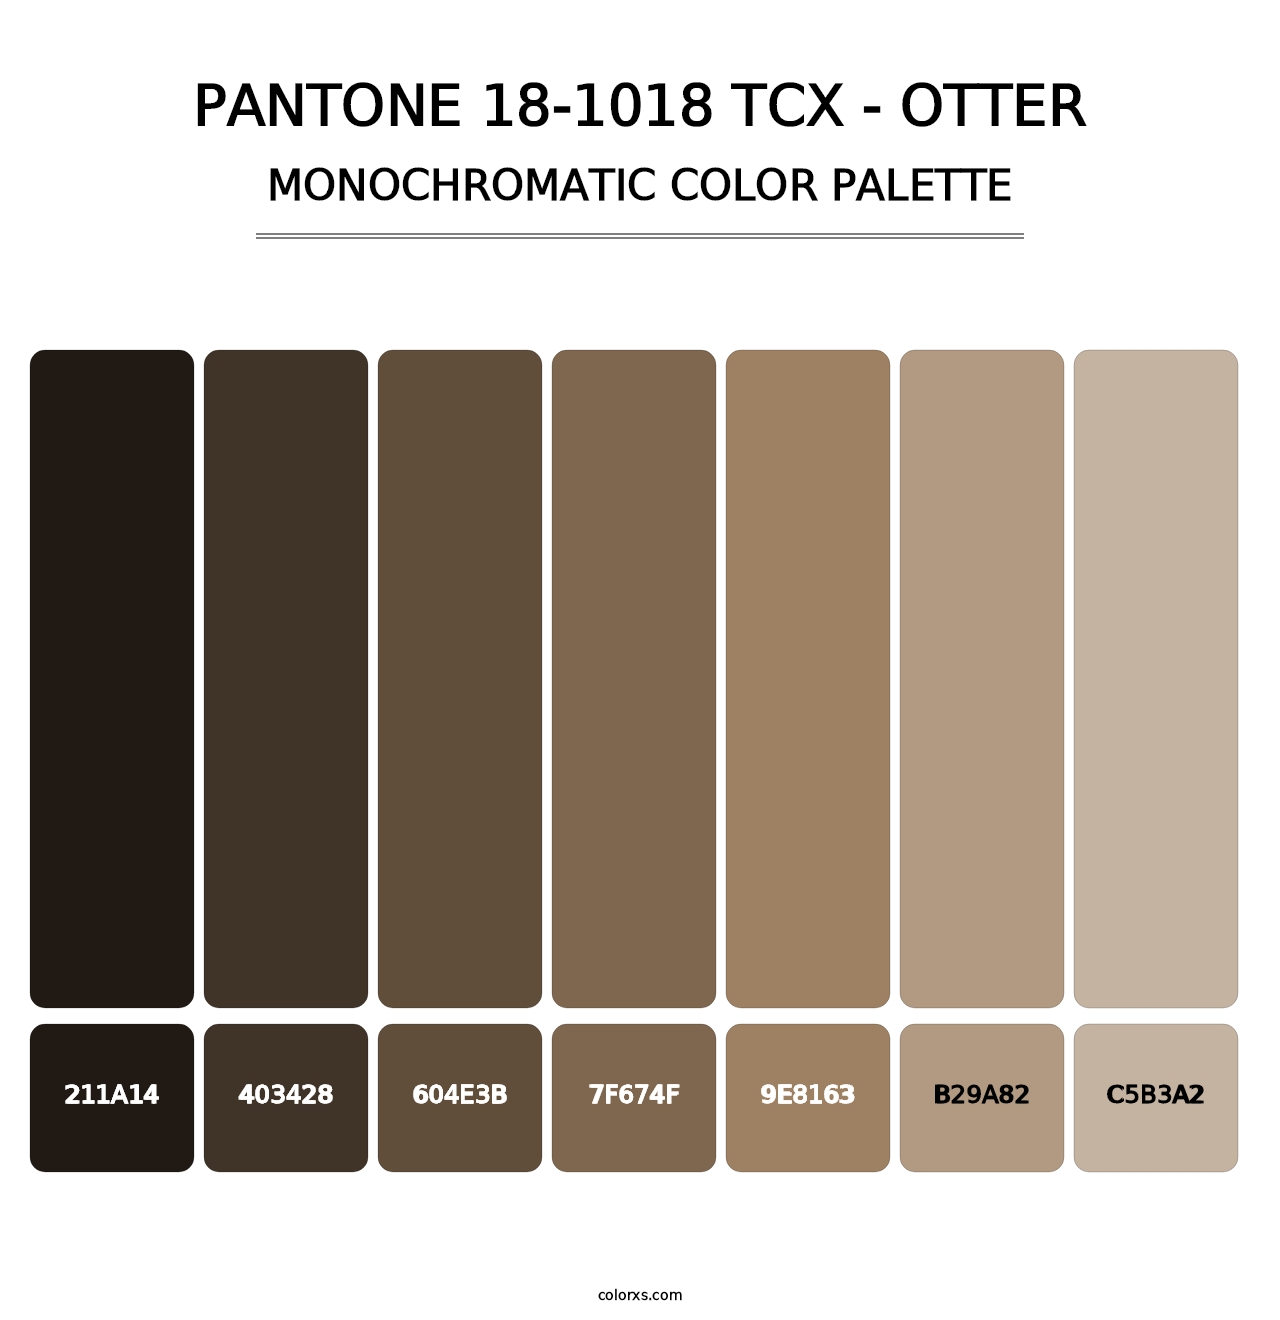 PANTONE 18-1018 TCX - Otter - Monochromatic Color Palette